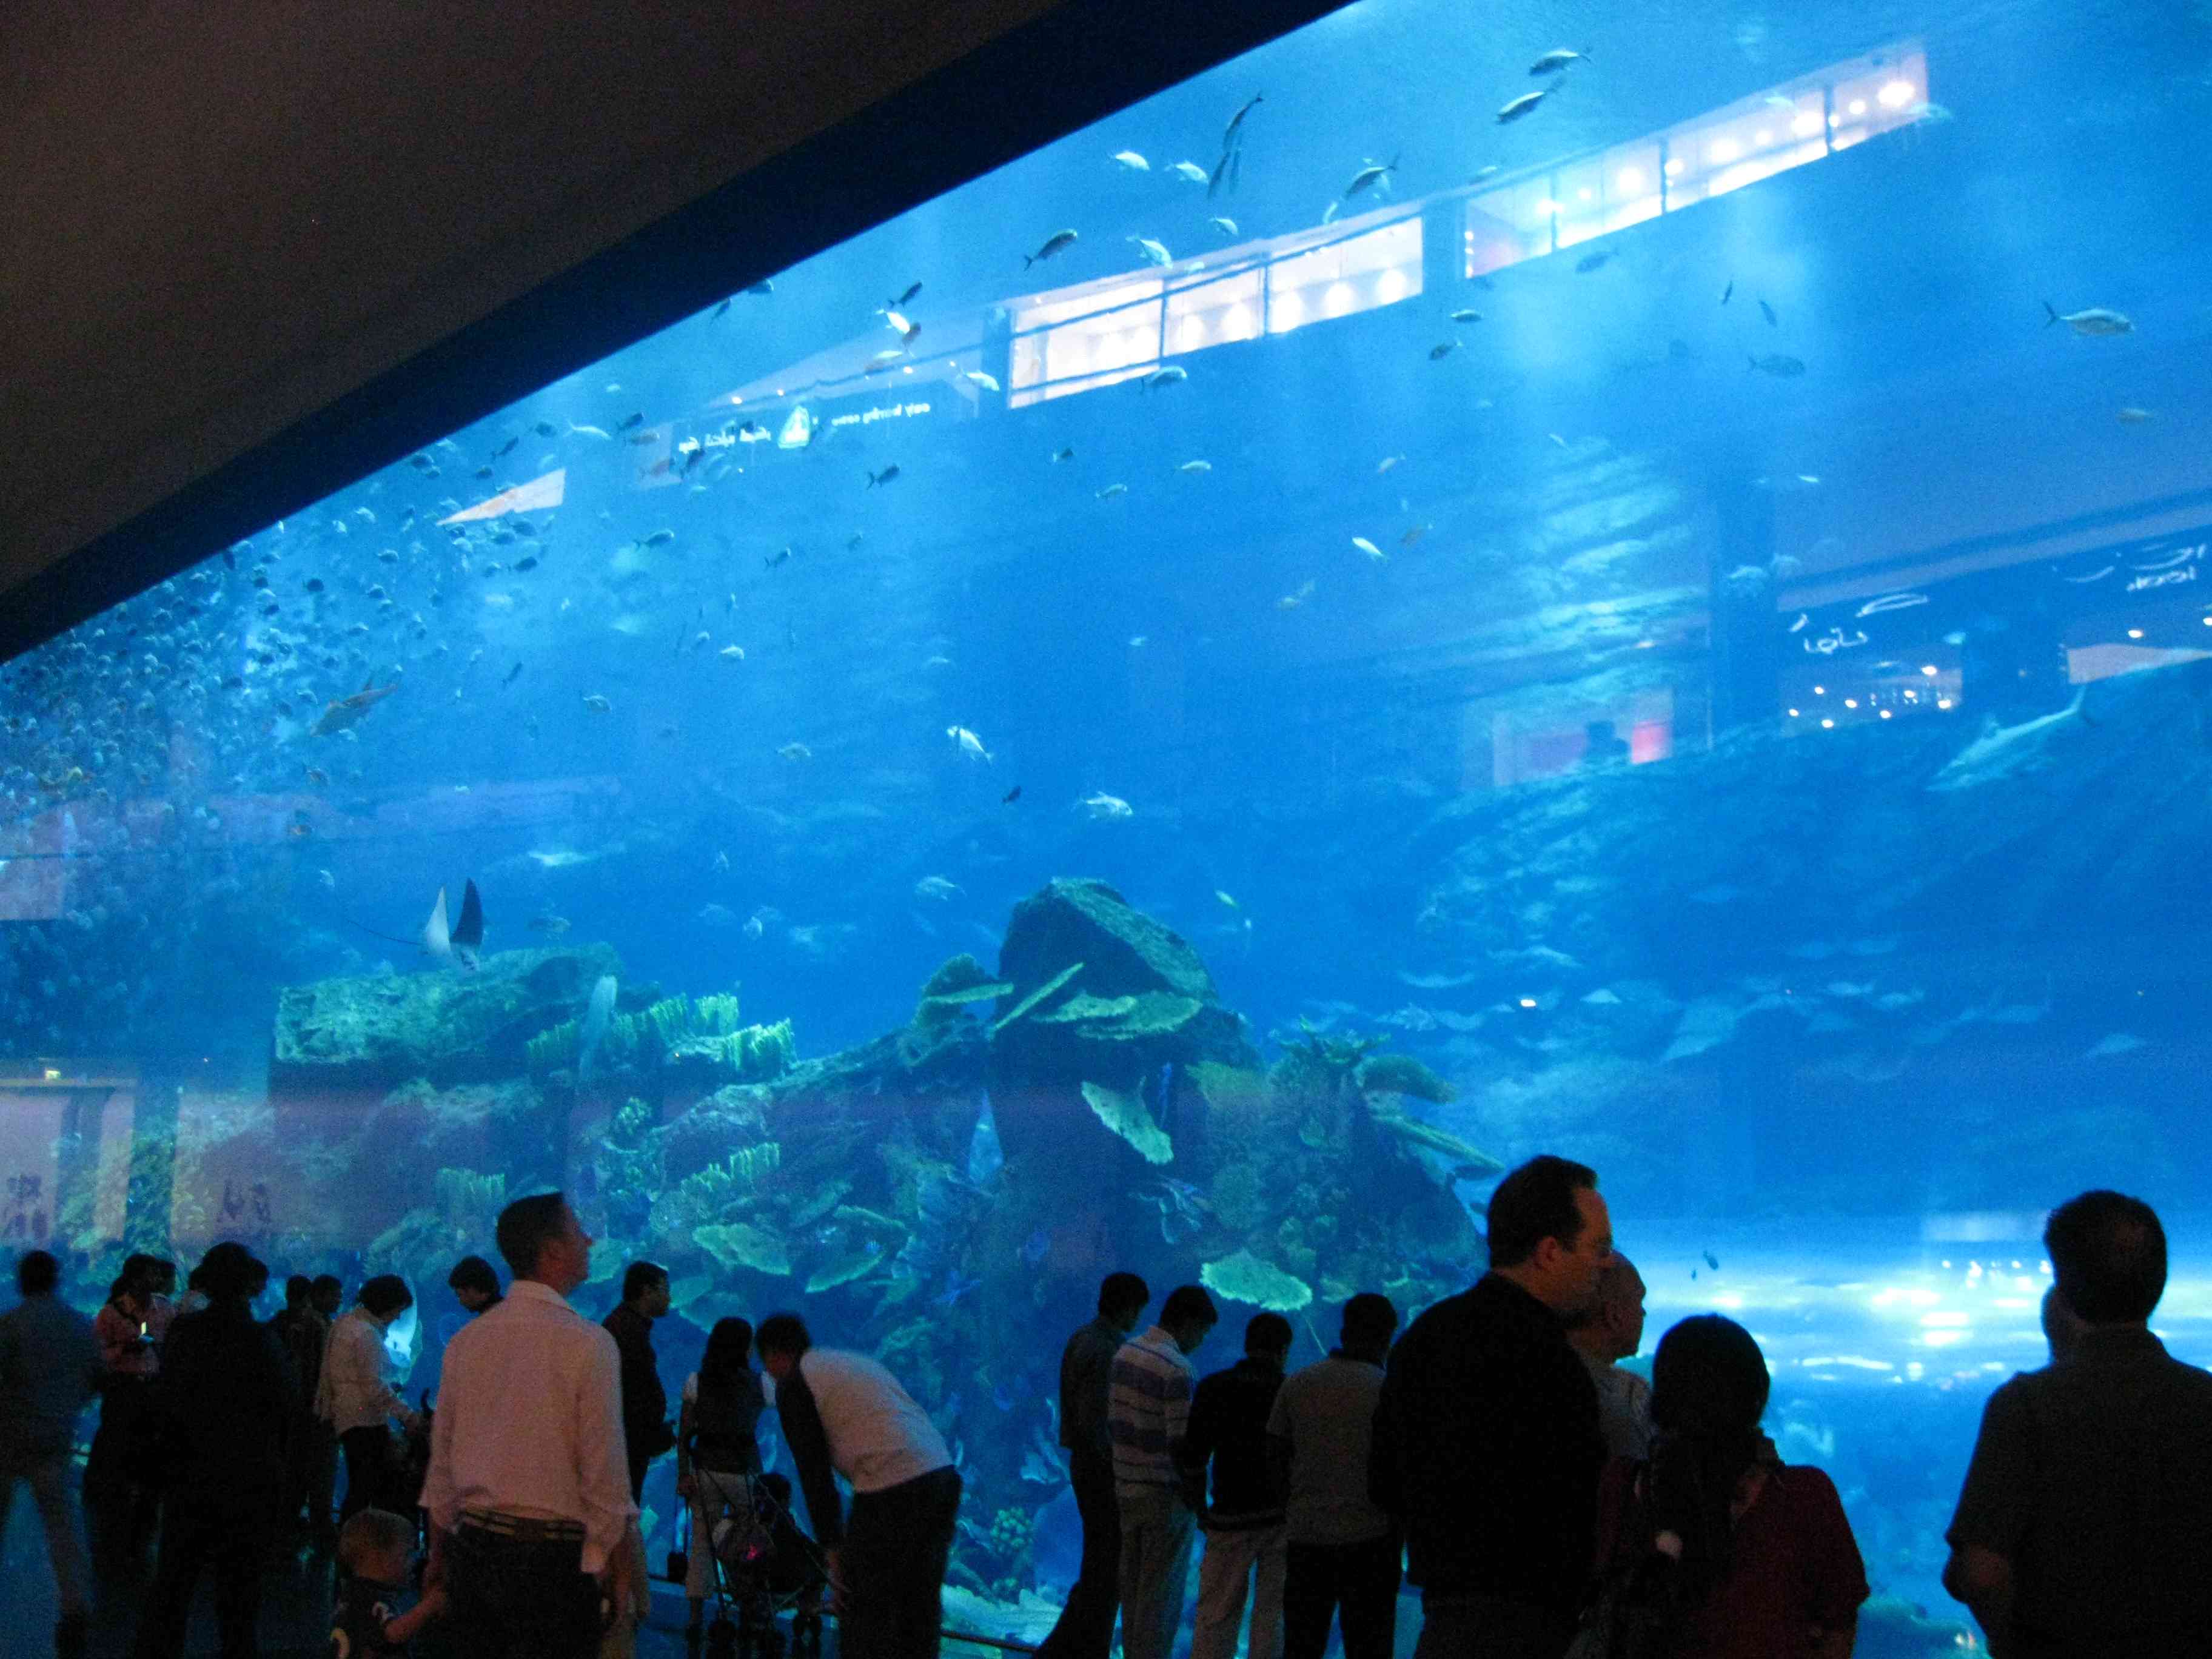 Dubai Mall Aquarium Leak